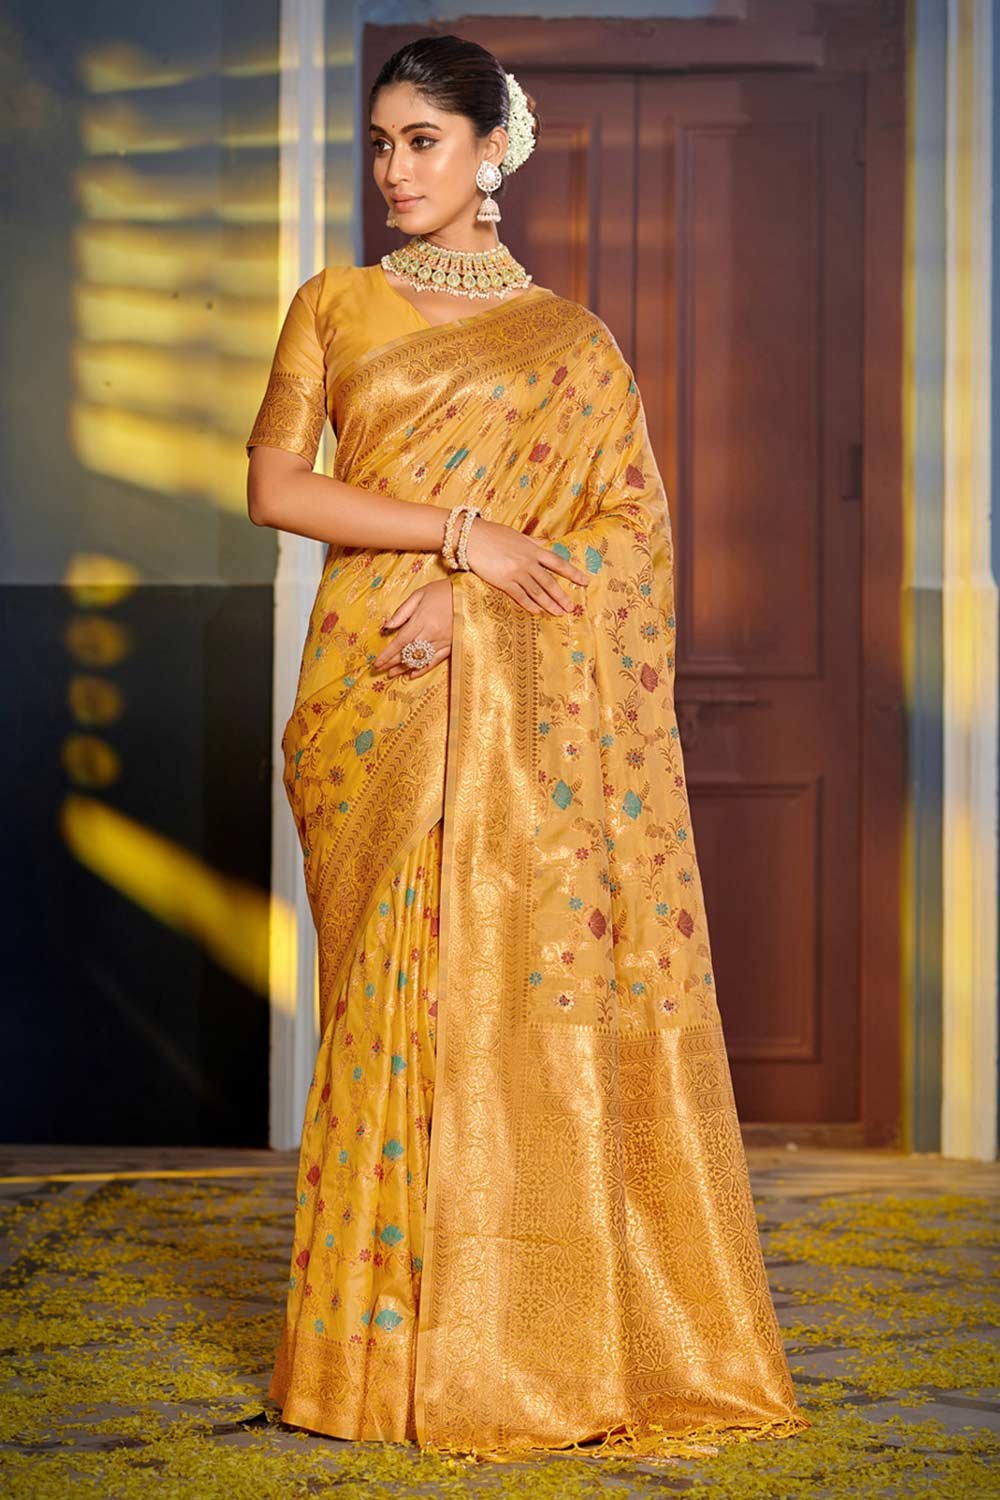 Yellow Banarasi Silk Woven Saree